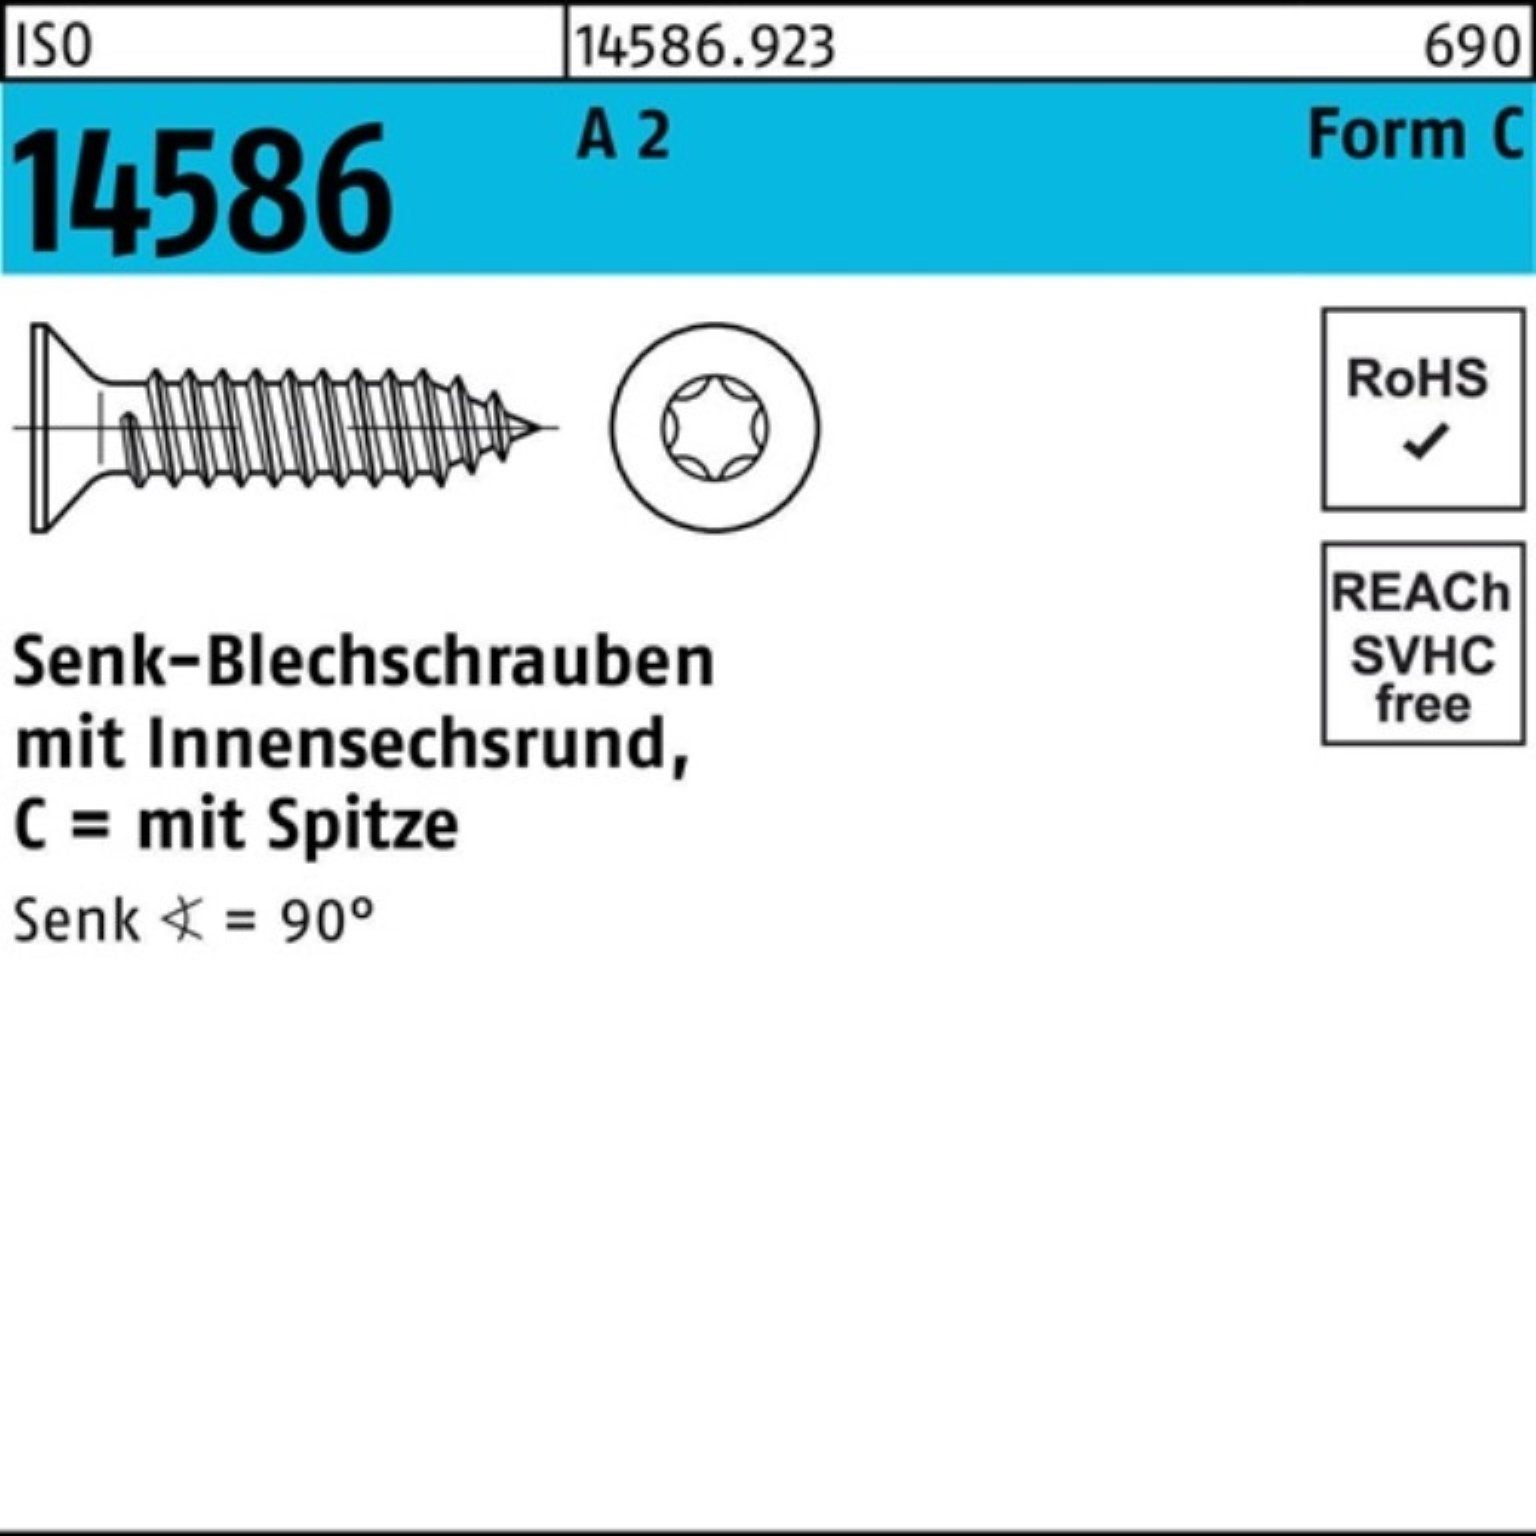 Reyher Schraube 14586 Pack Senkblechschraube 6,3x ISO A ISR/Spitze -C 250er 2 2 45 T30